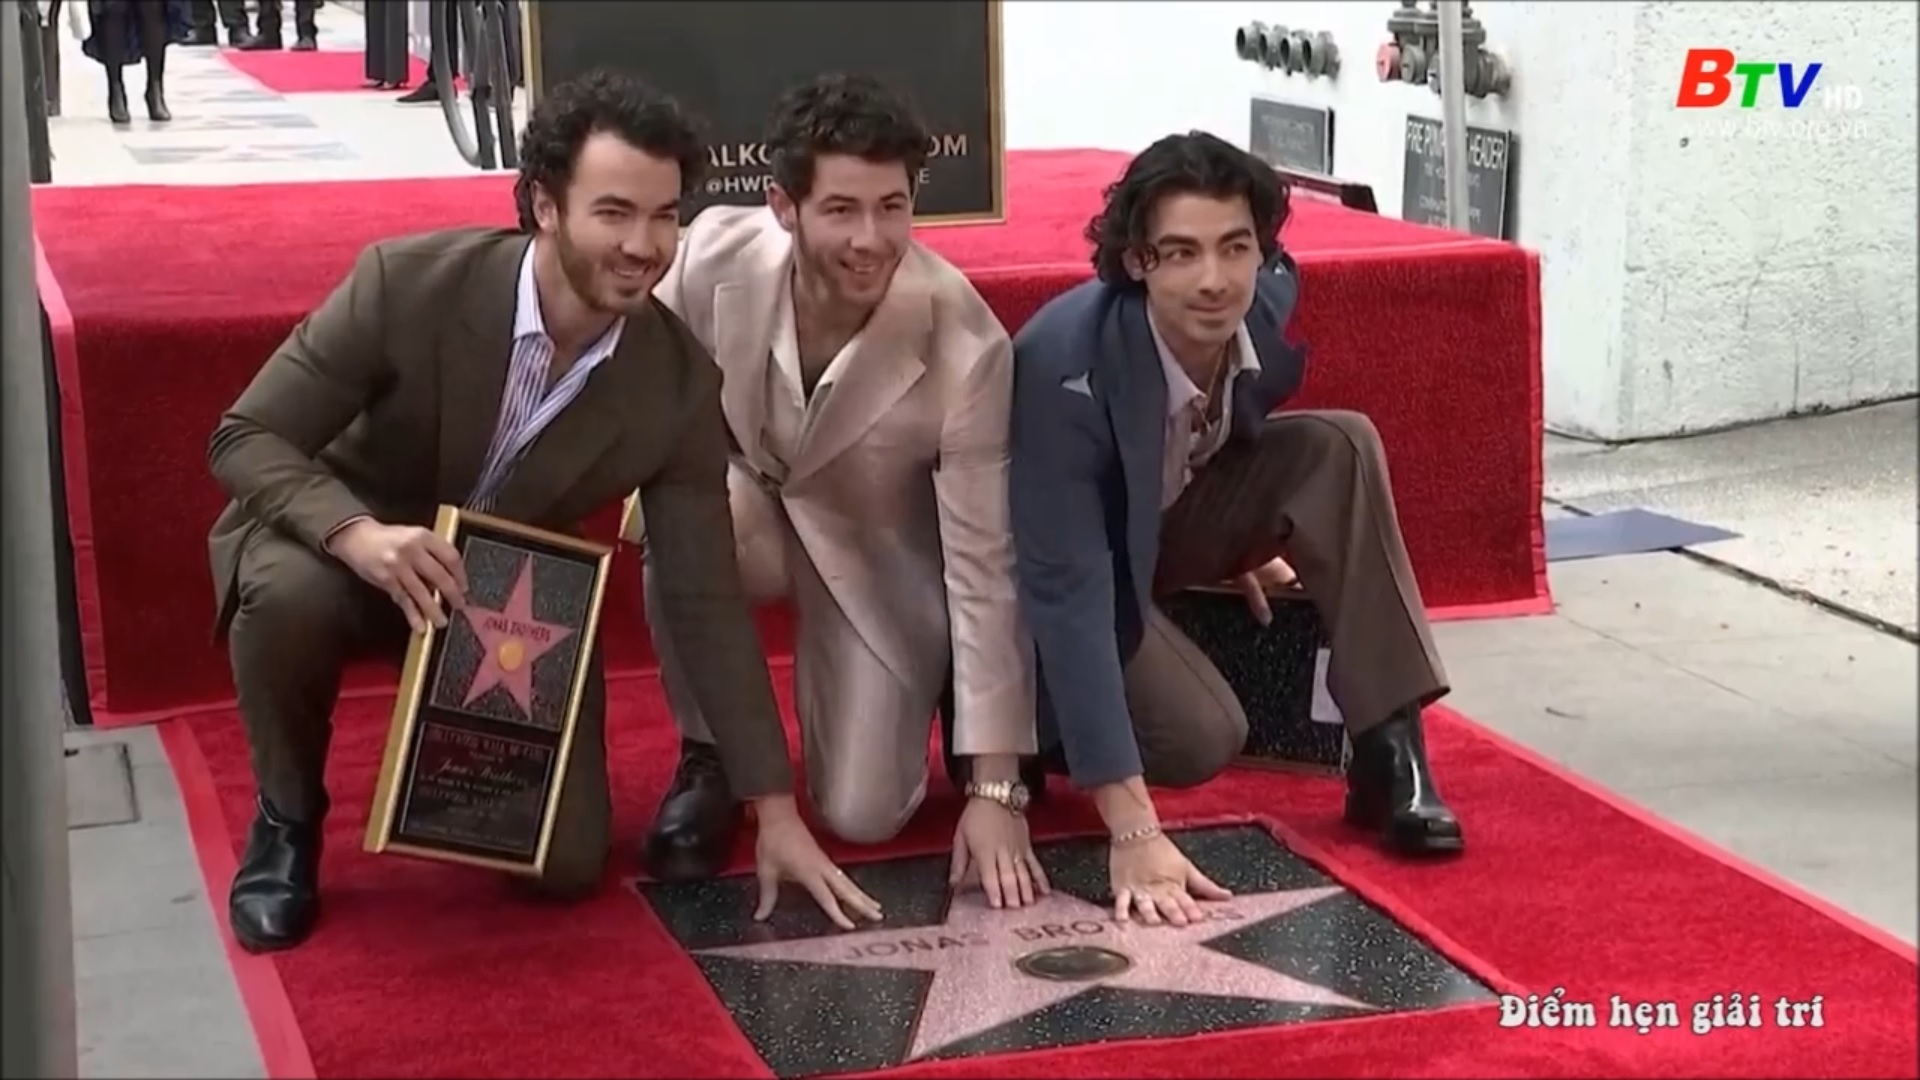 Ban nhạc anh em nhà Jonas nhận sao trên đại lộ danh vọng Hollywood